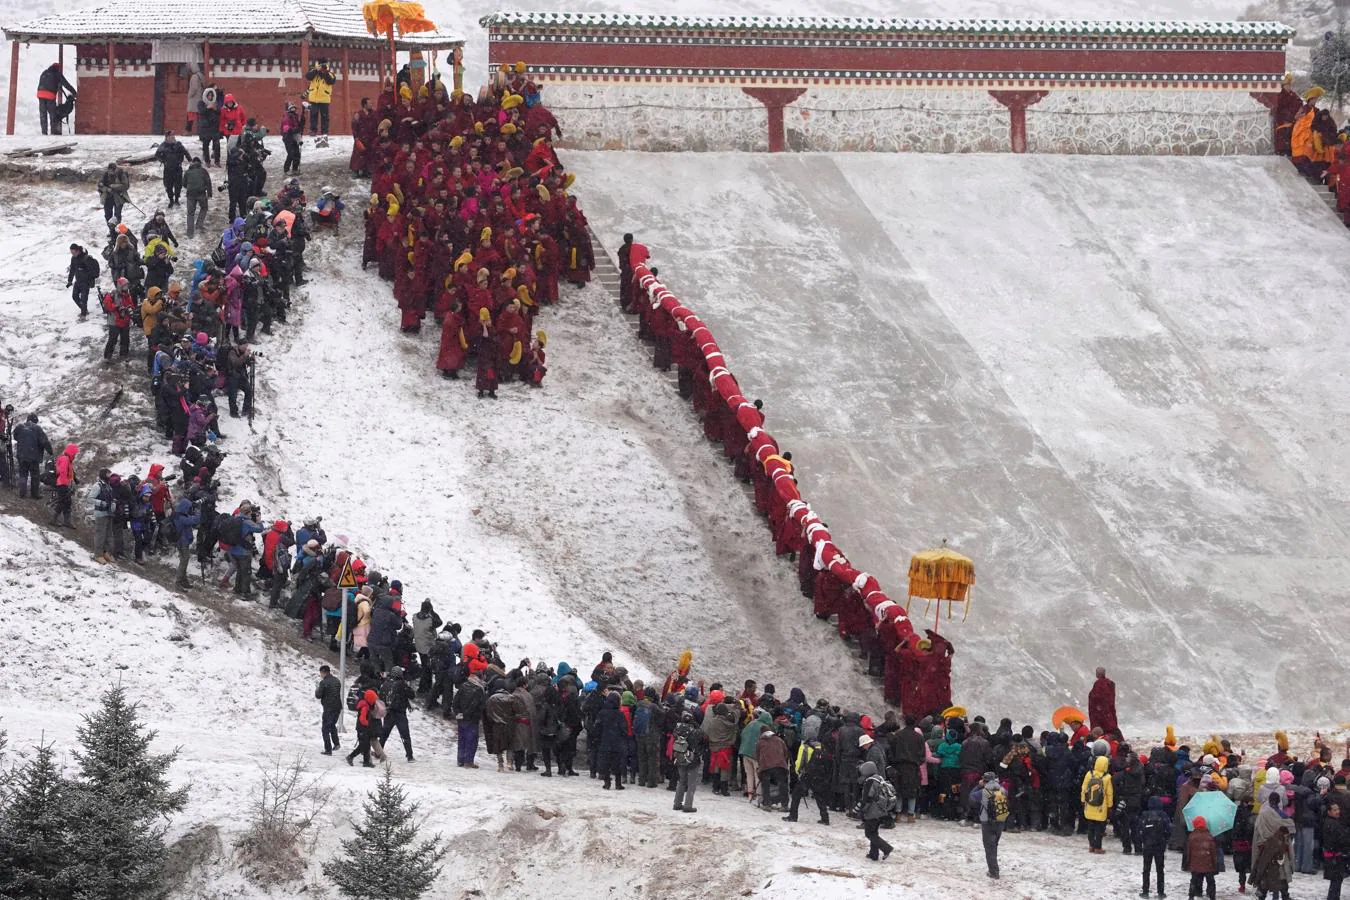 El frío y la nieve no impidió que los monjes tibetanos asistieran a una ceremonia en el Langmu Lamasery durante el 'Sunbathing Buddha Festival', el pasado domingo en la Prefectura Autónoma Tibetana de Gannan, provincia de Gansu, China.